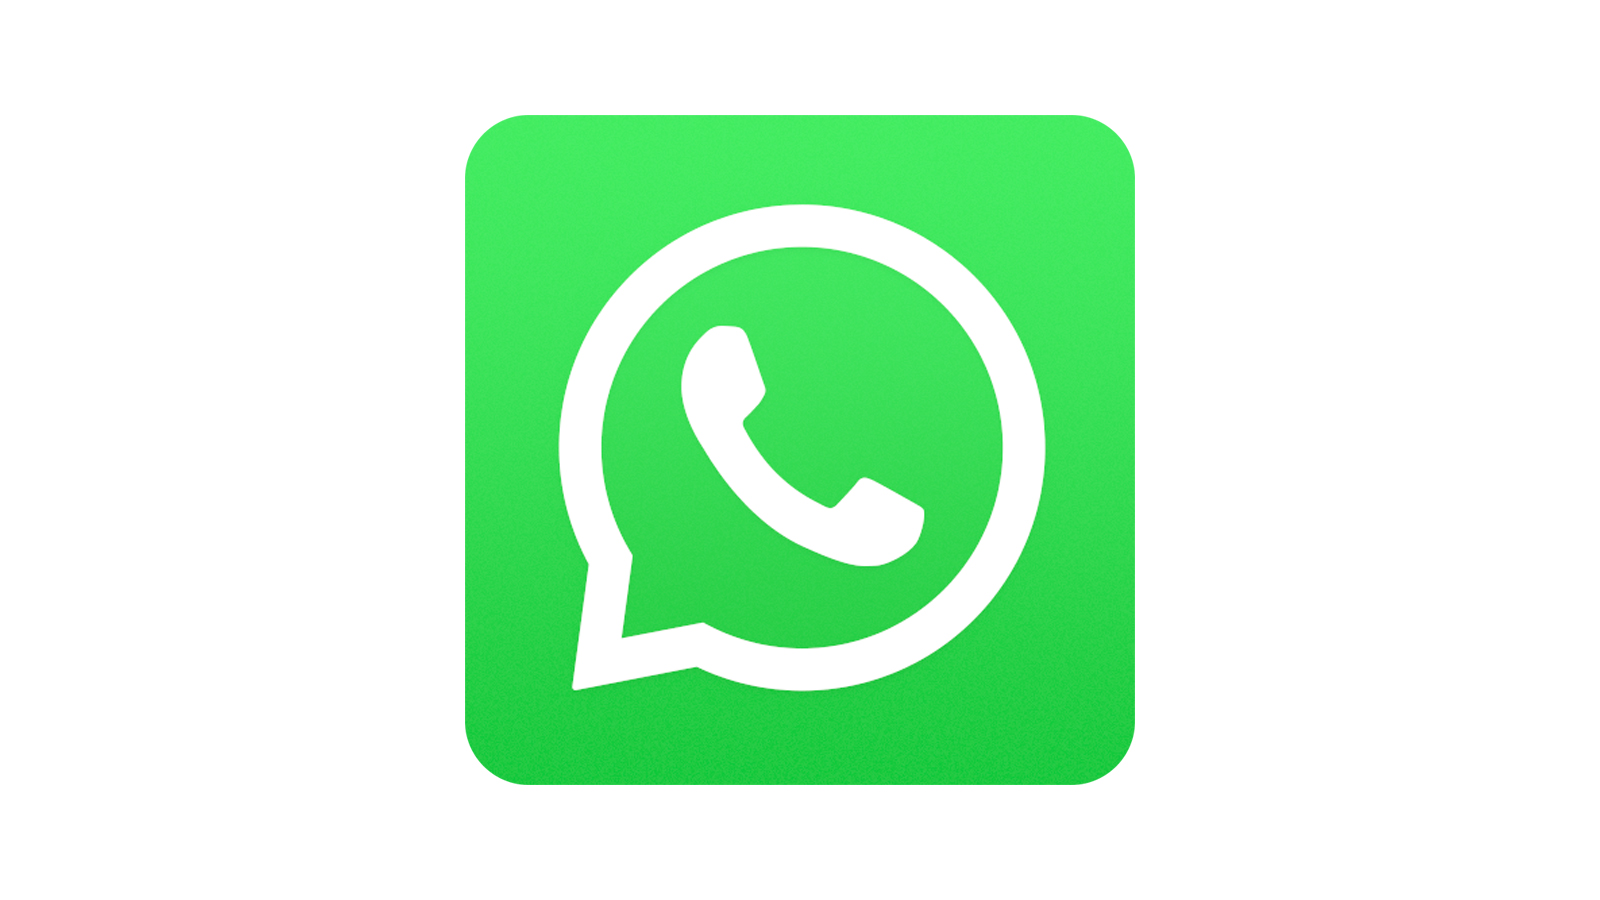 WhatsApp vous permet enfin de passer facilement d'Android à iOS